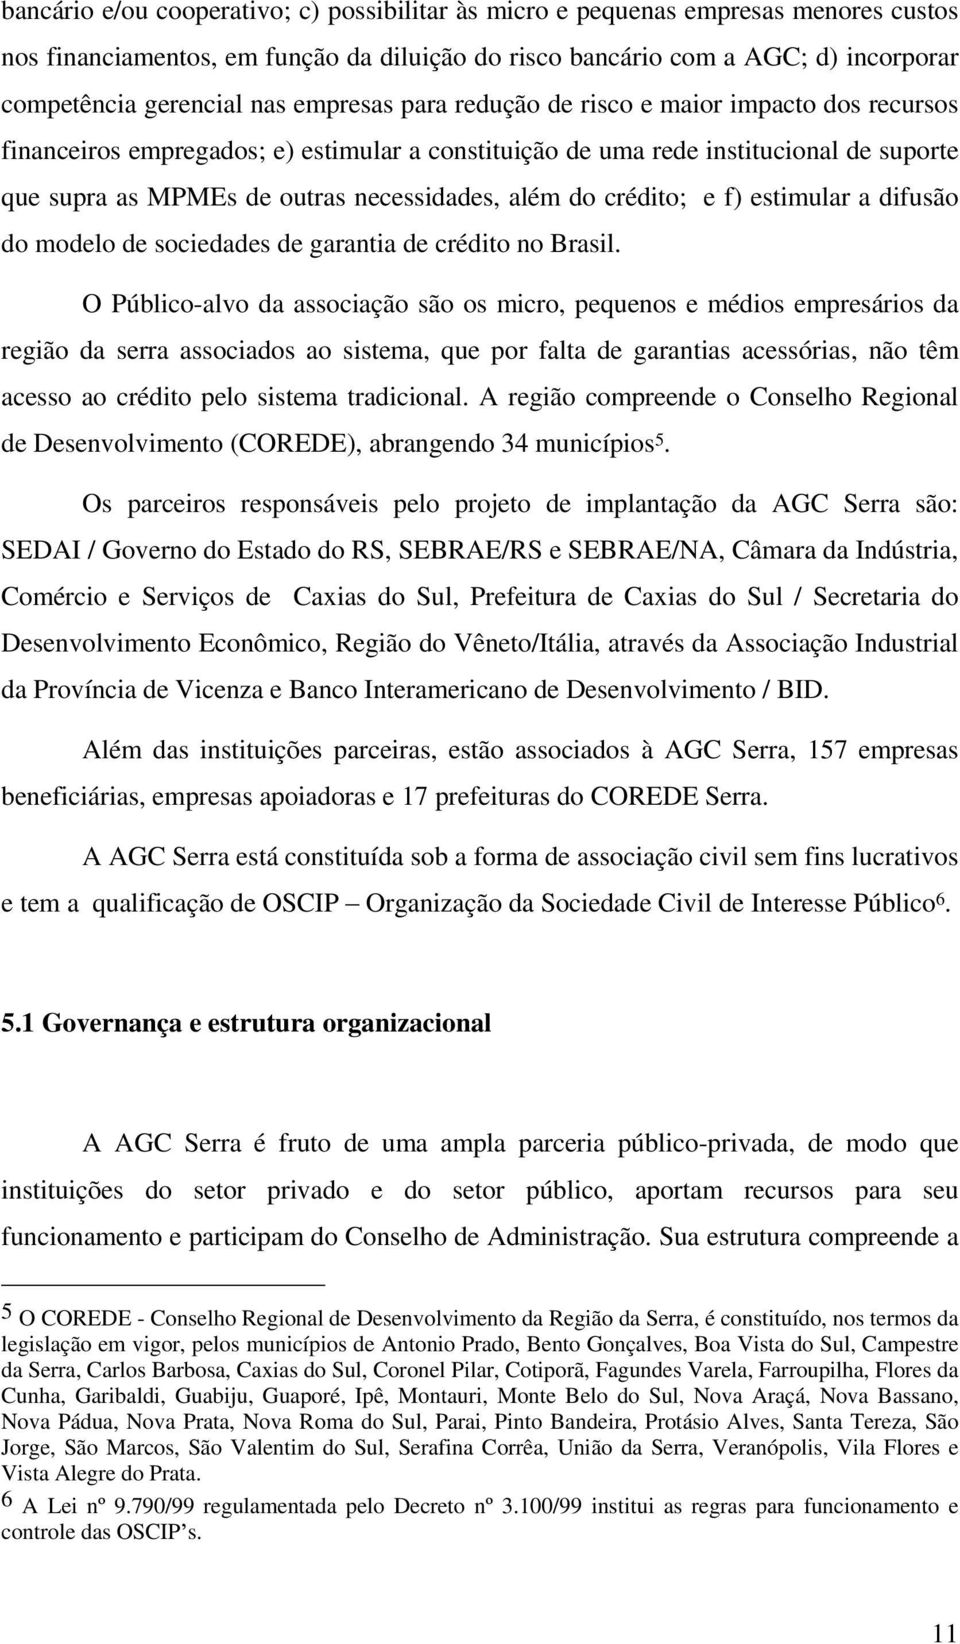 crédito; e f) estimular a difusão do modelo de sociedades de garantia de crédito no Brasil.